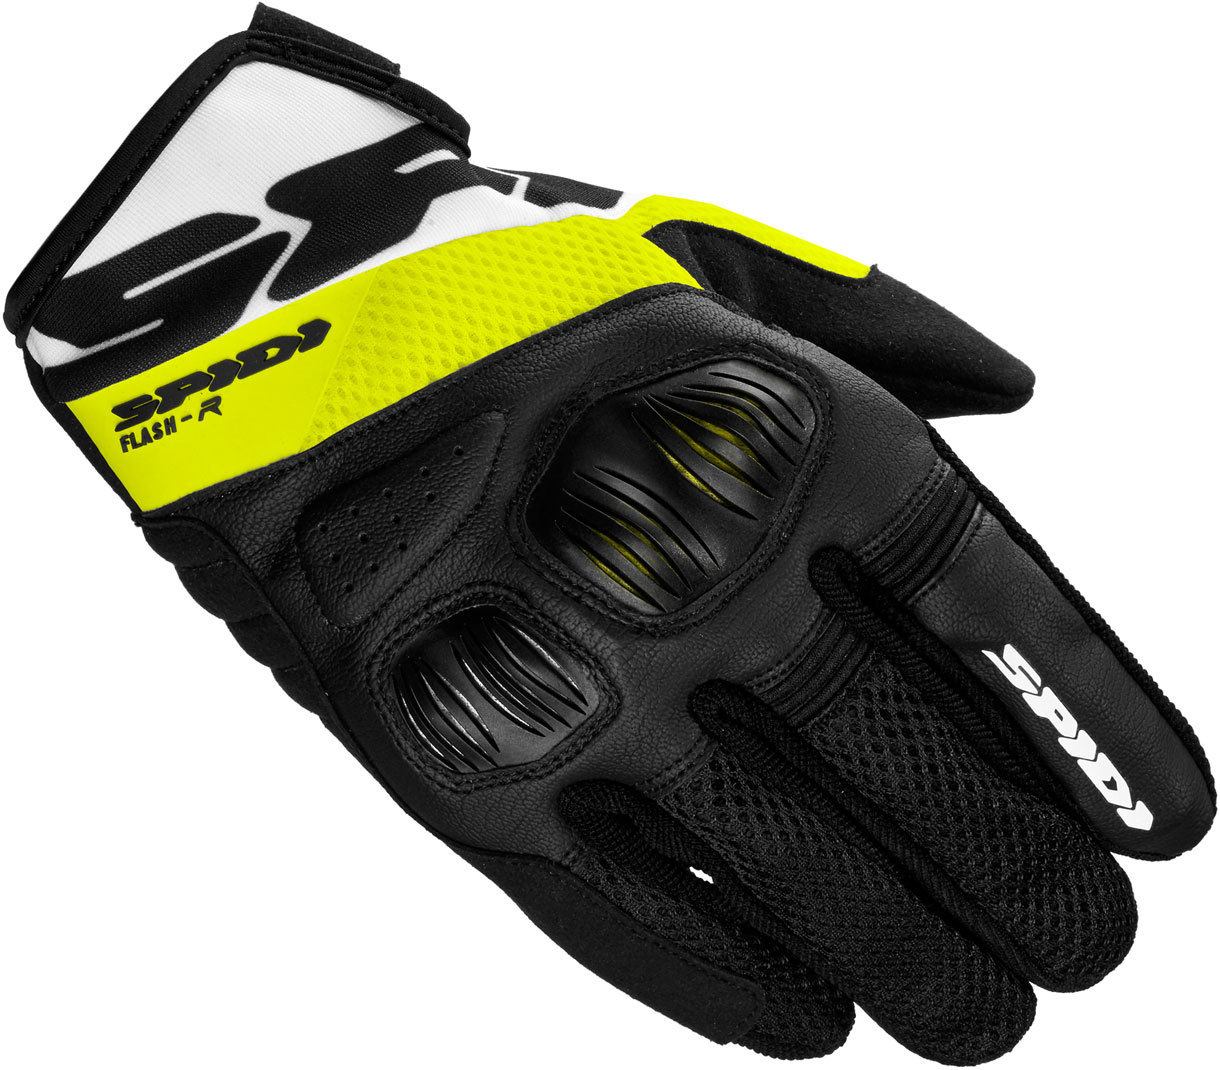 Spidi Flash-R Evo Handschuhe, schwarz-gelb, Gre L, schwarz-gelb, Gre L